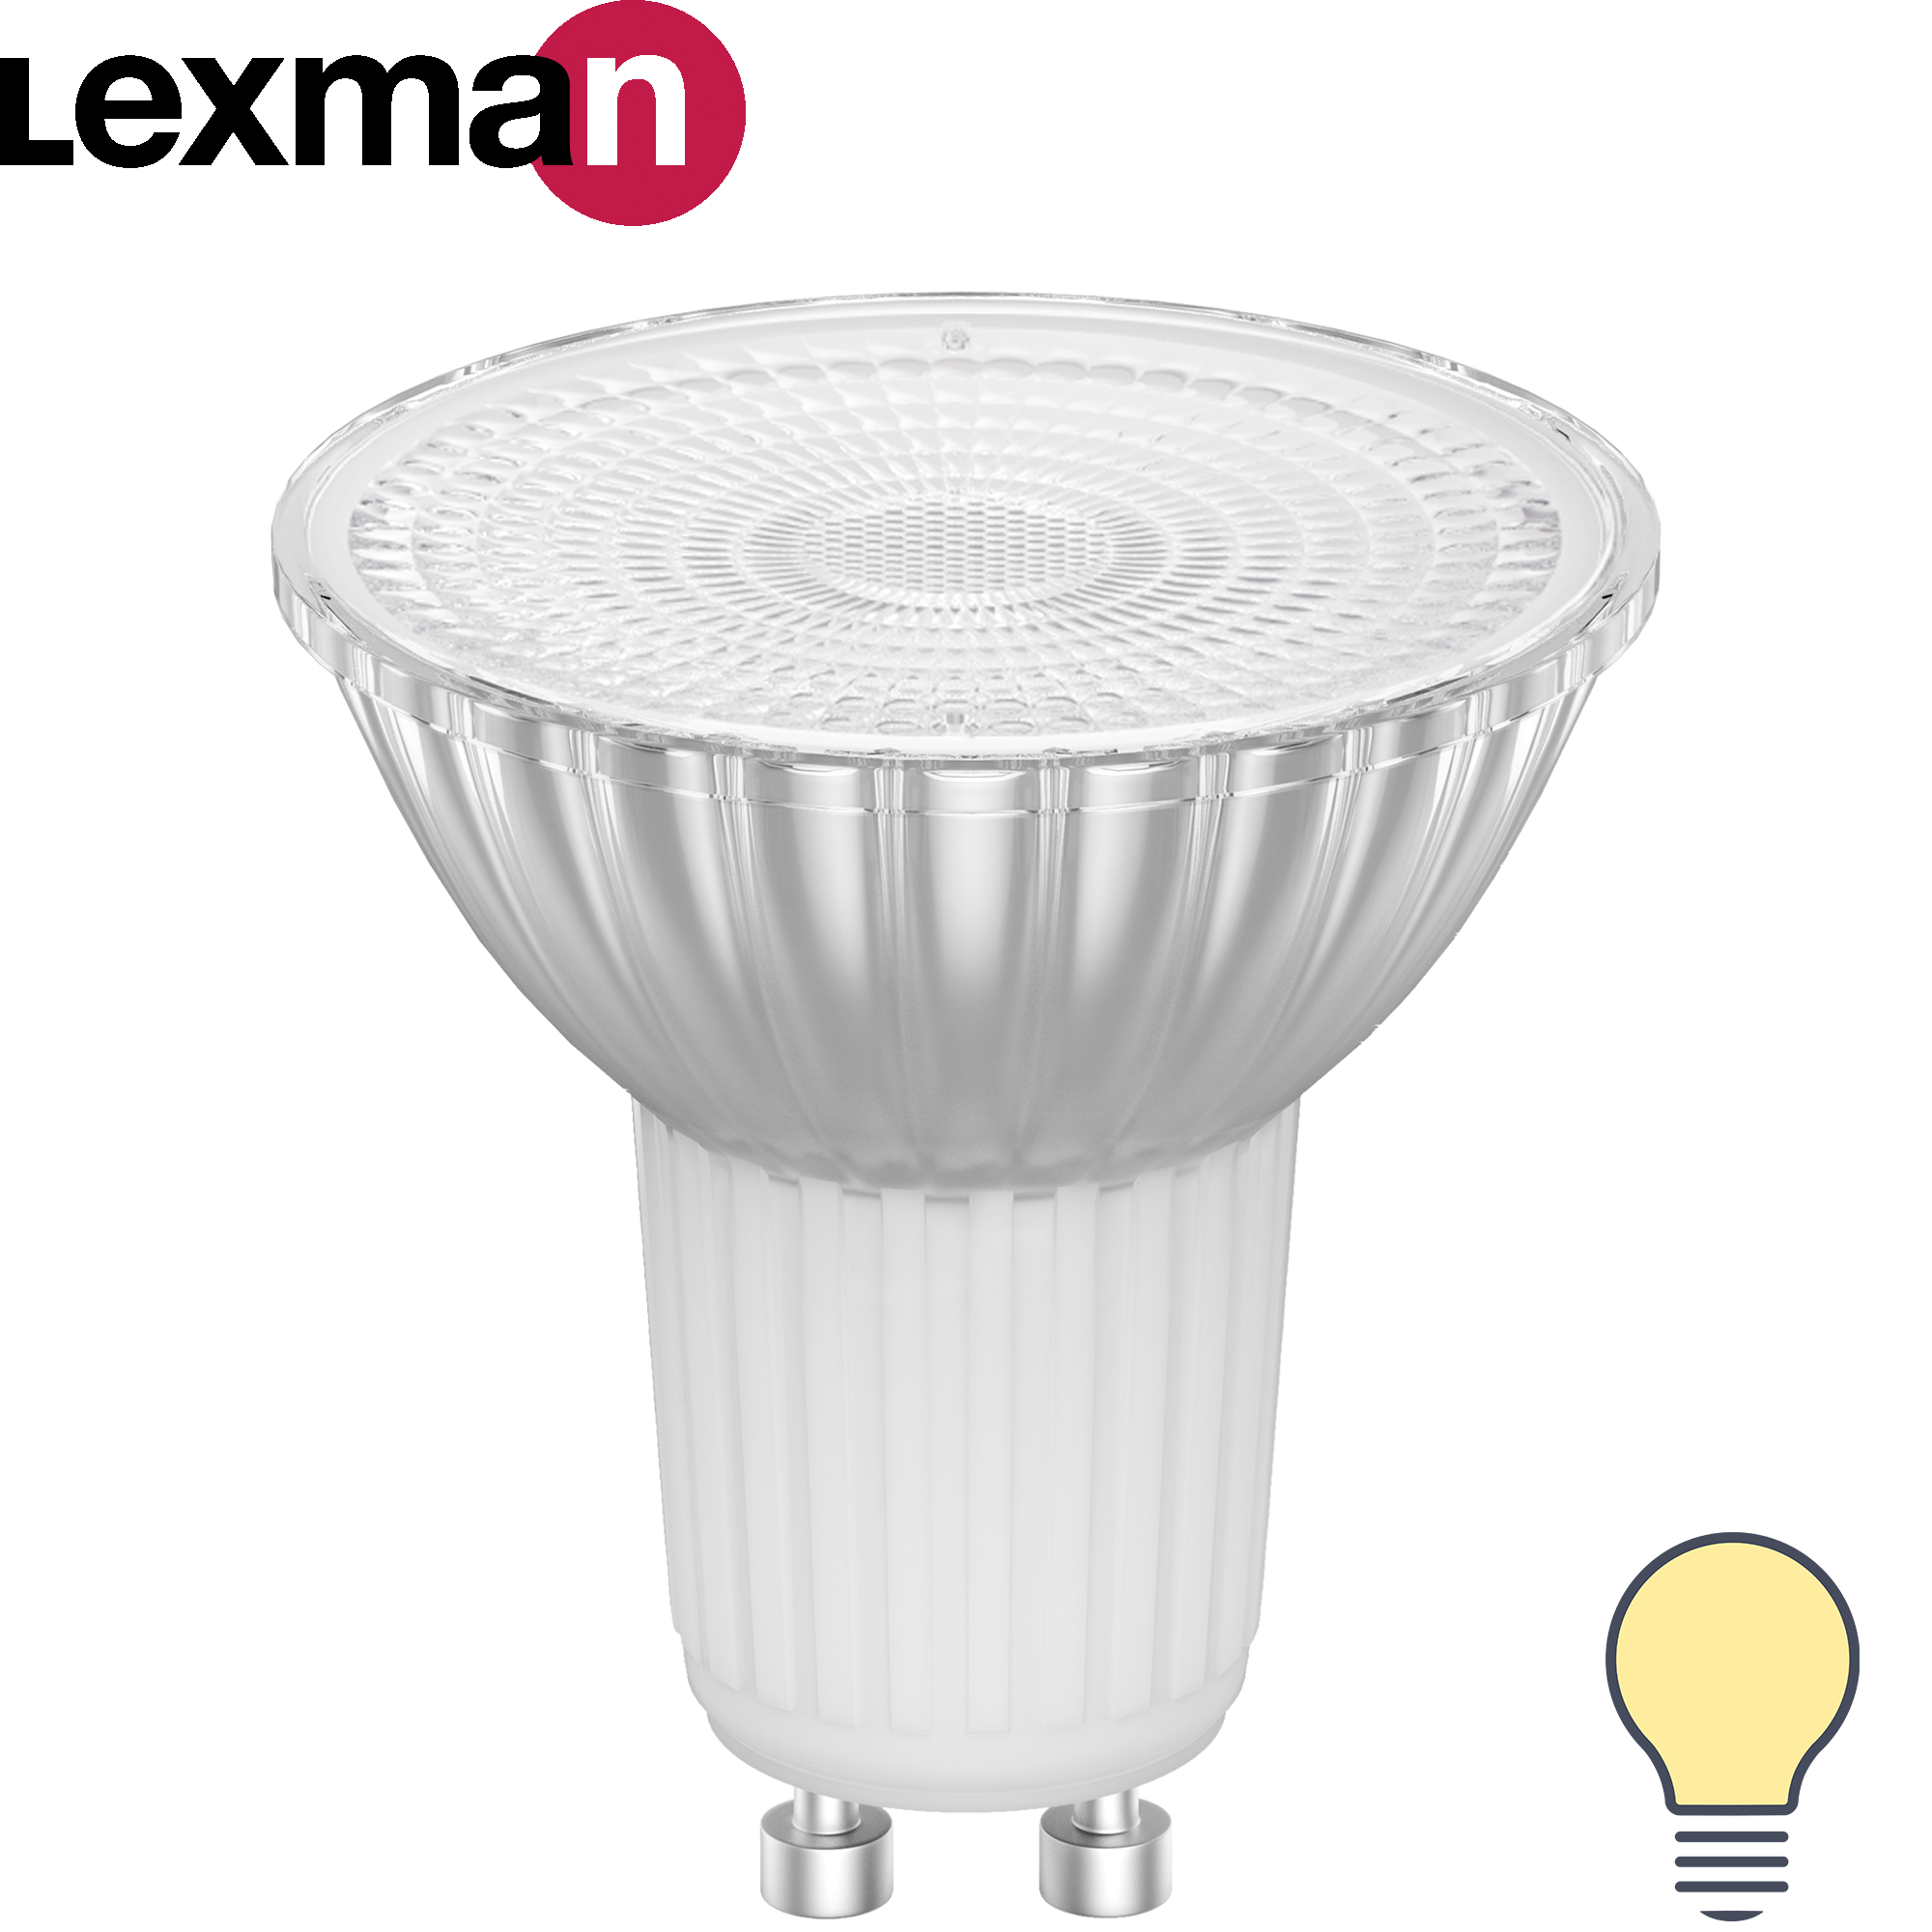 82991655 Лампа светодиодная GU10 220-240 В 5.5 Вт прозрачная 500 лм теплый белый свет STLM-0038583 LEXMAN